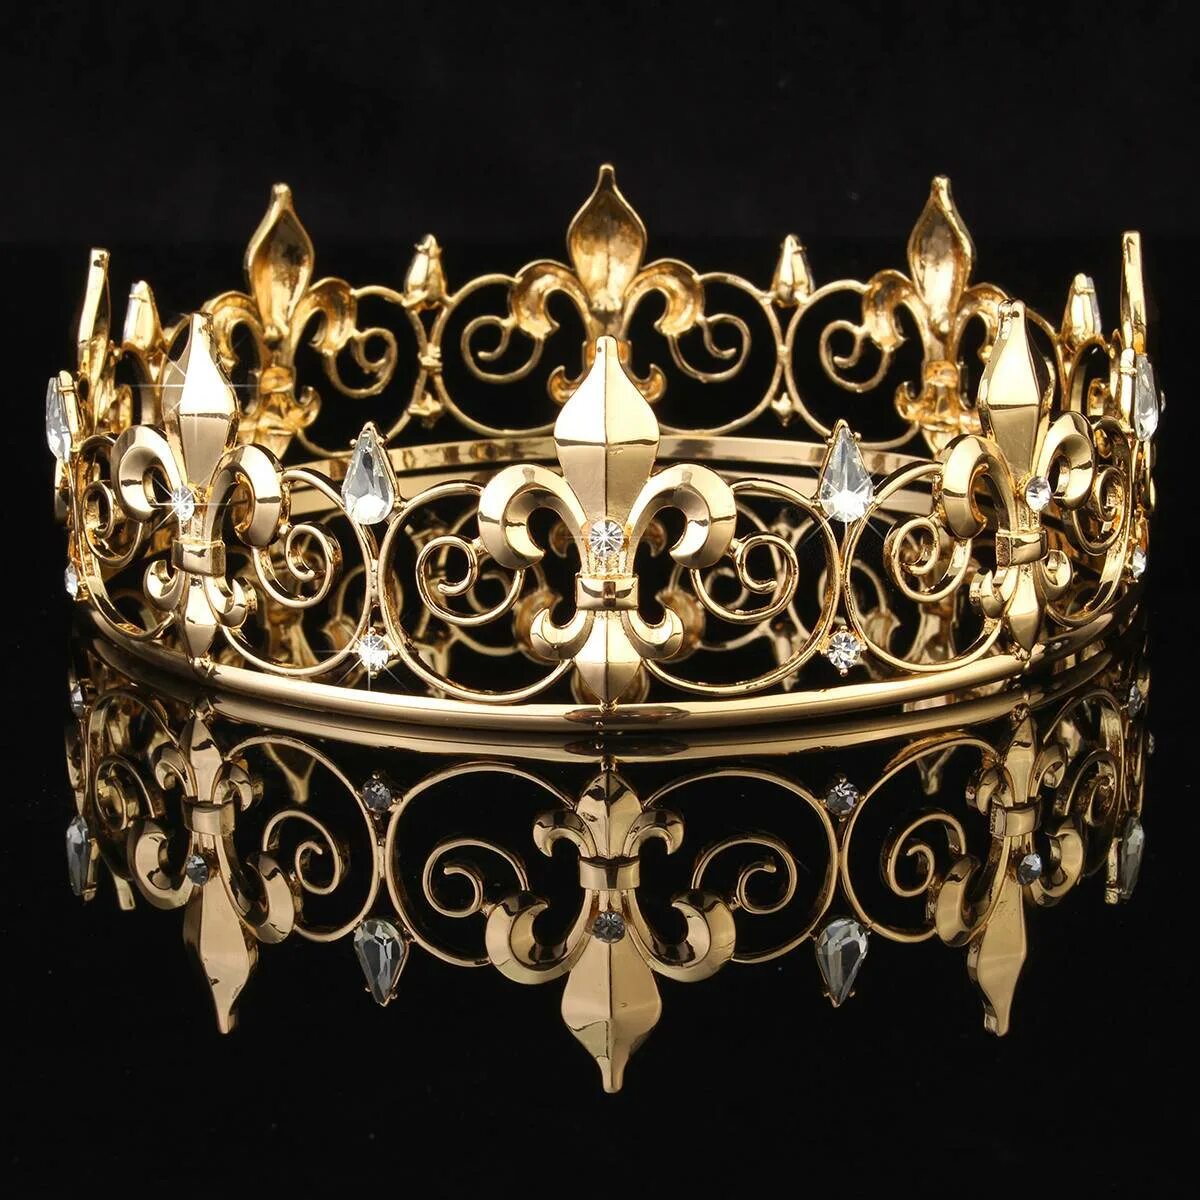 Корона короля тиара. Диадема корона Королевская Золотая. Диадема Флер-де-Лис. Королевская корона (серебряная с драгоценными камнями). Корона царская золото